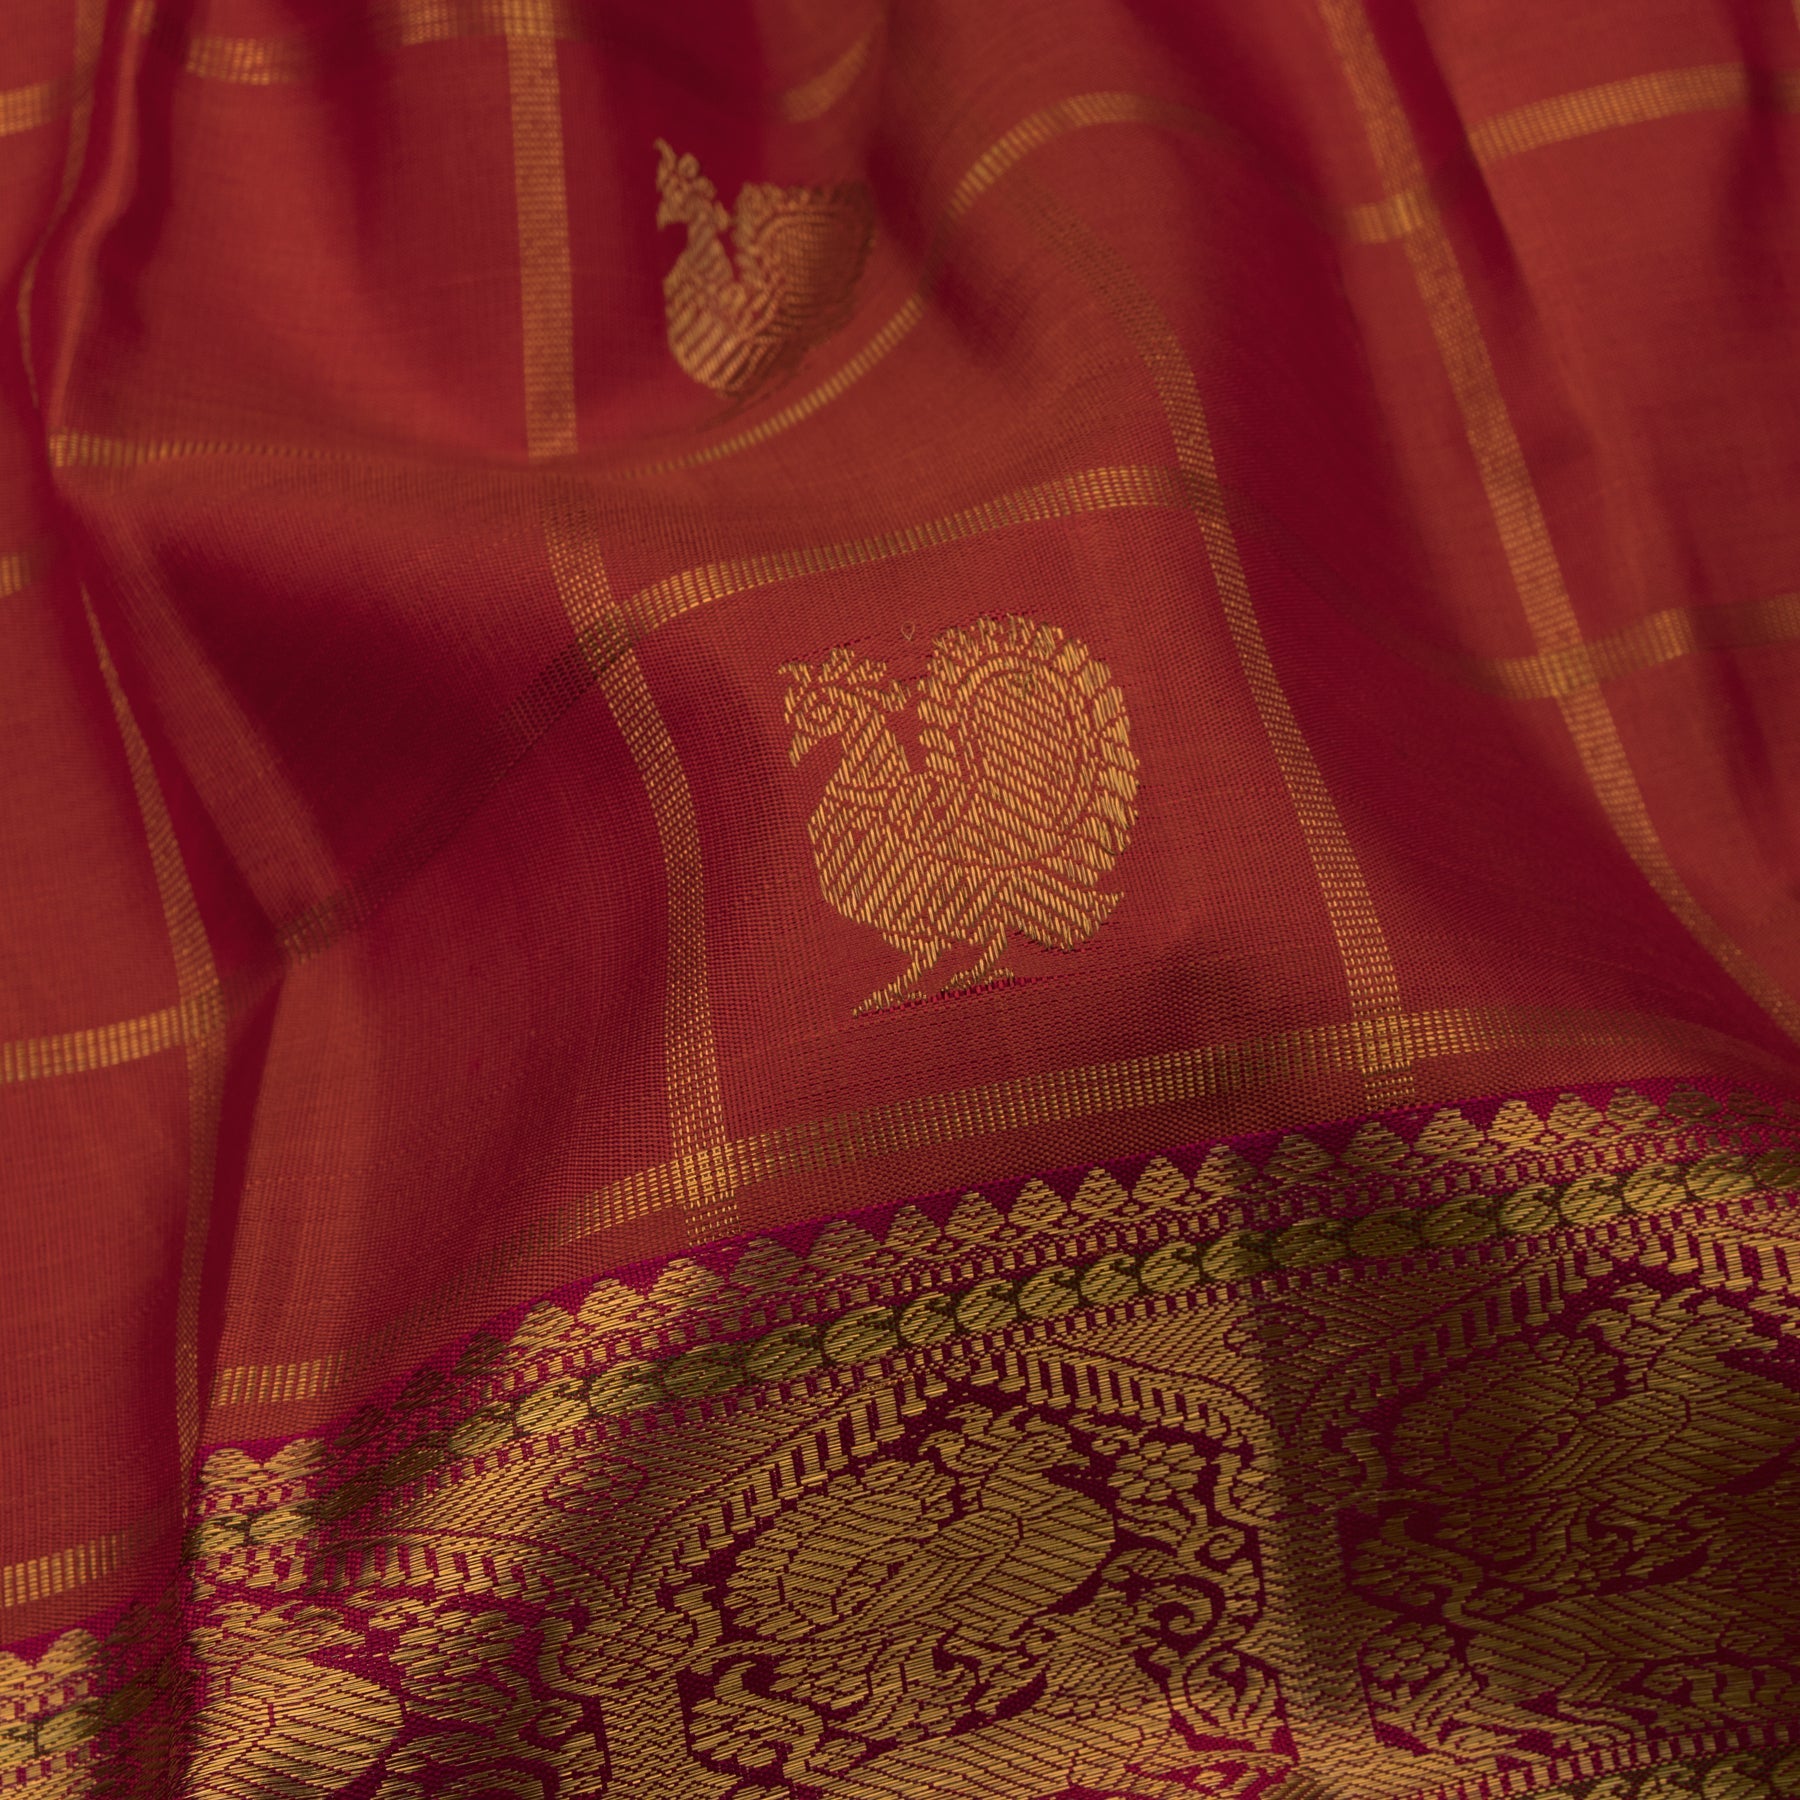 Kanakavalli Kanjivaram Silk Sari 23-110-HS001-01001 - Fabric View